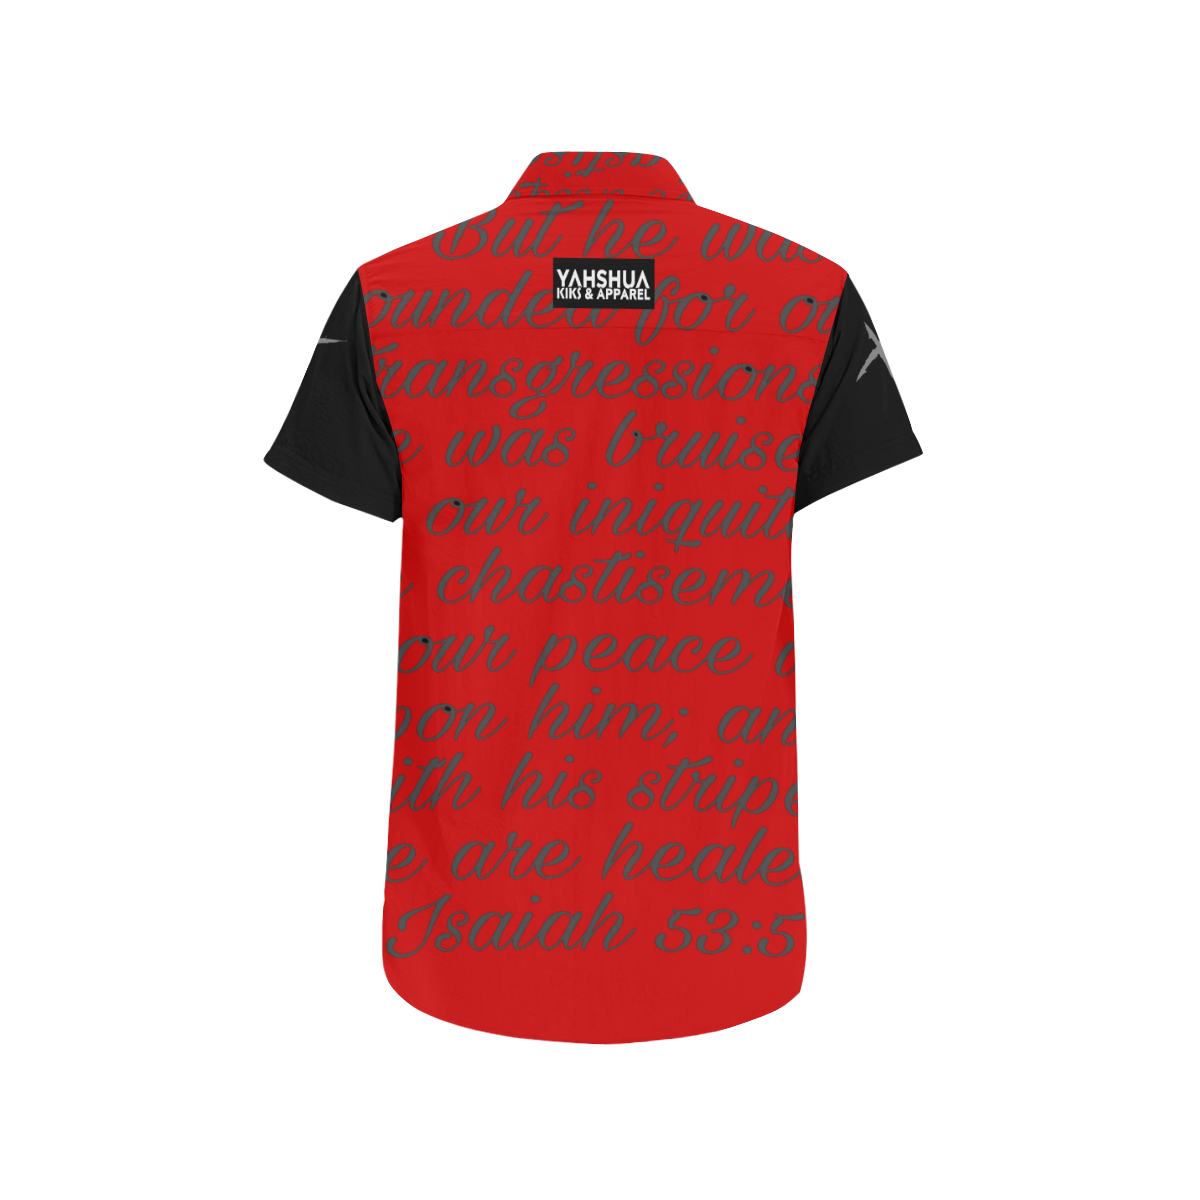 Red/Black Men's All Over Print Short Sleeve Shirt (Model T53)